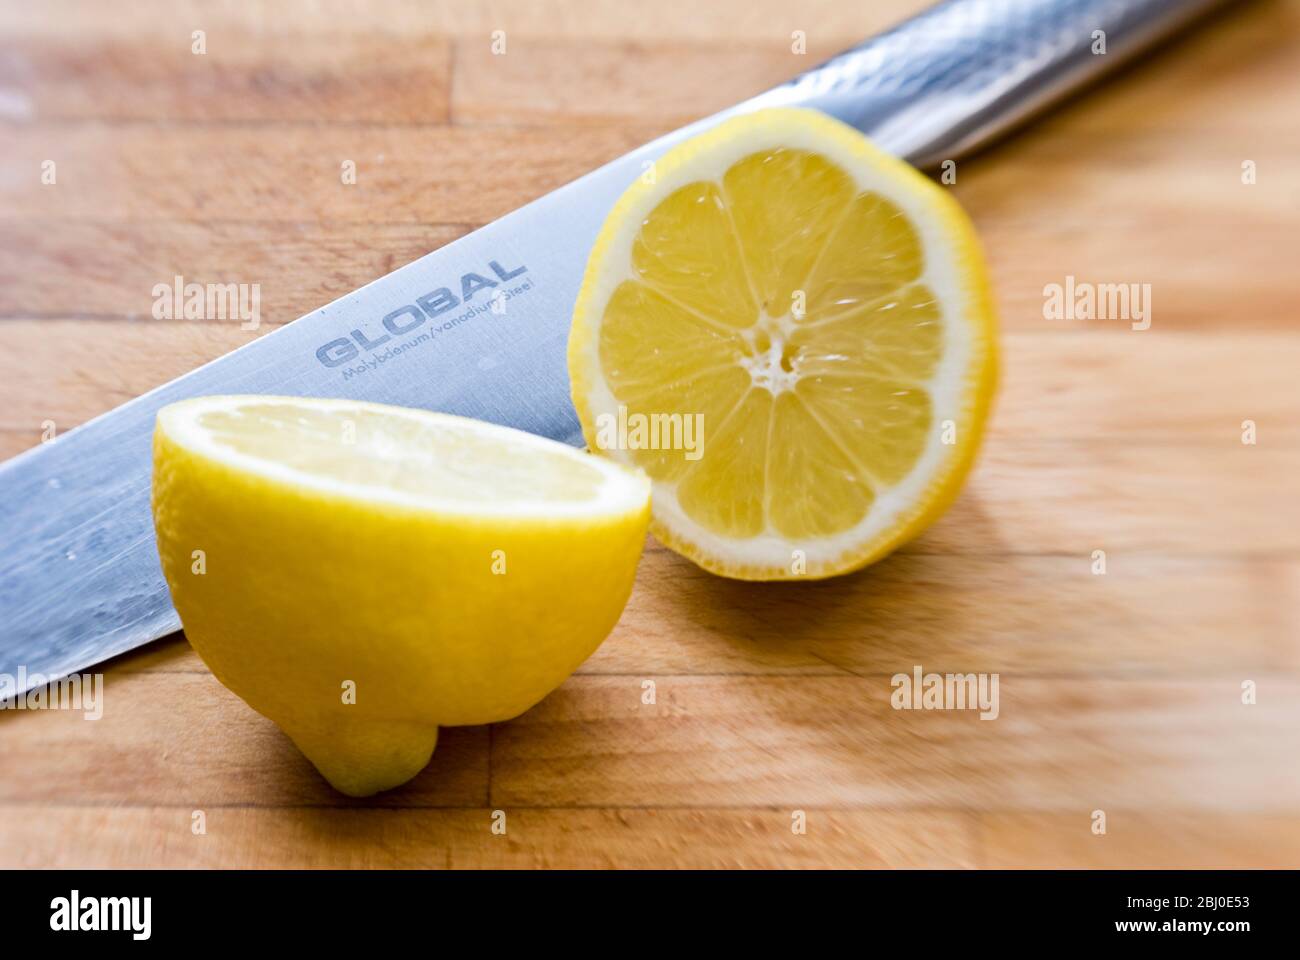 Halbierte Zitrone auf Holzbrett, mit Global Messer - Stockfoto